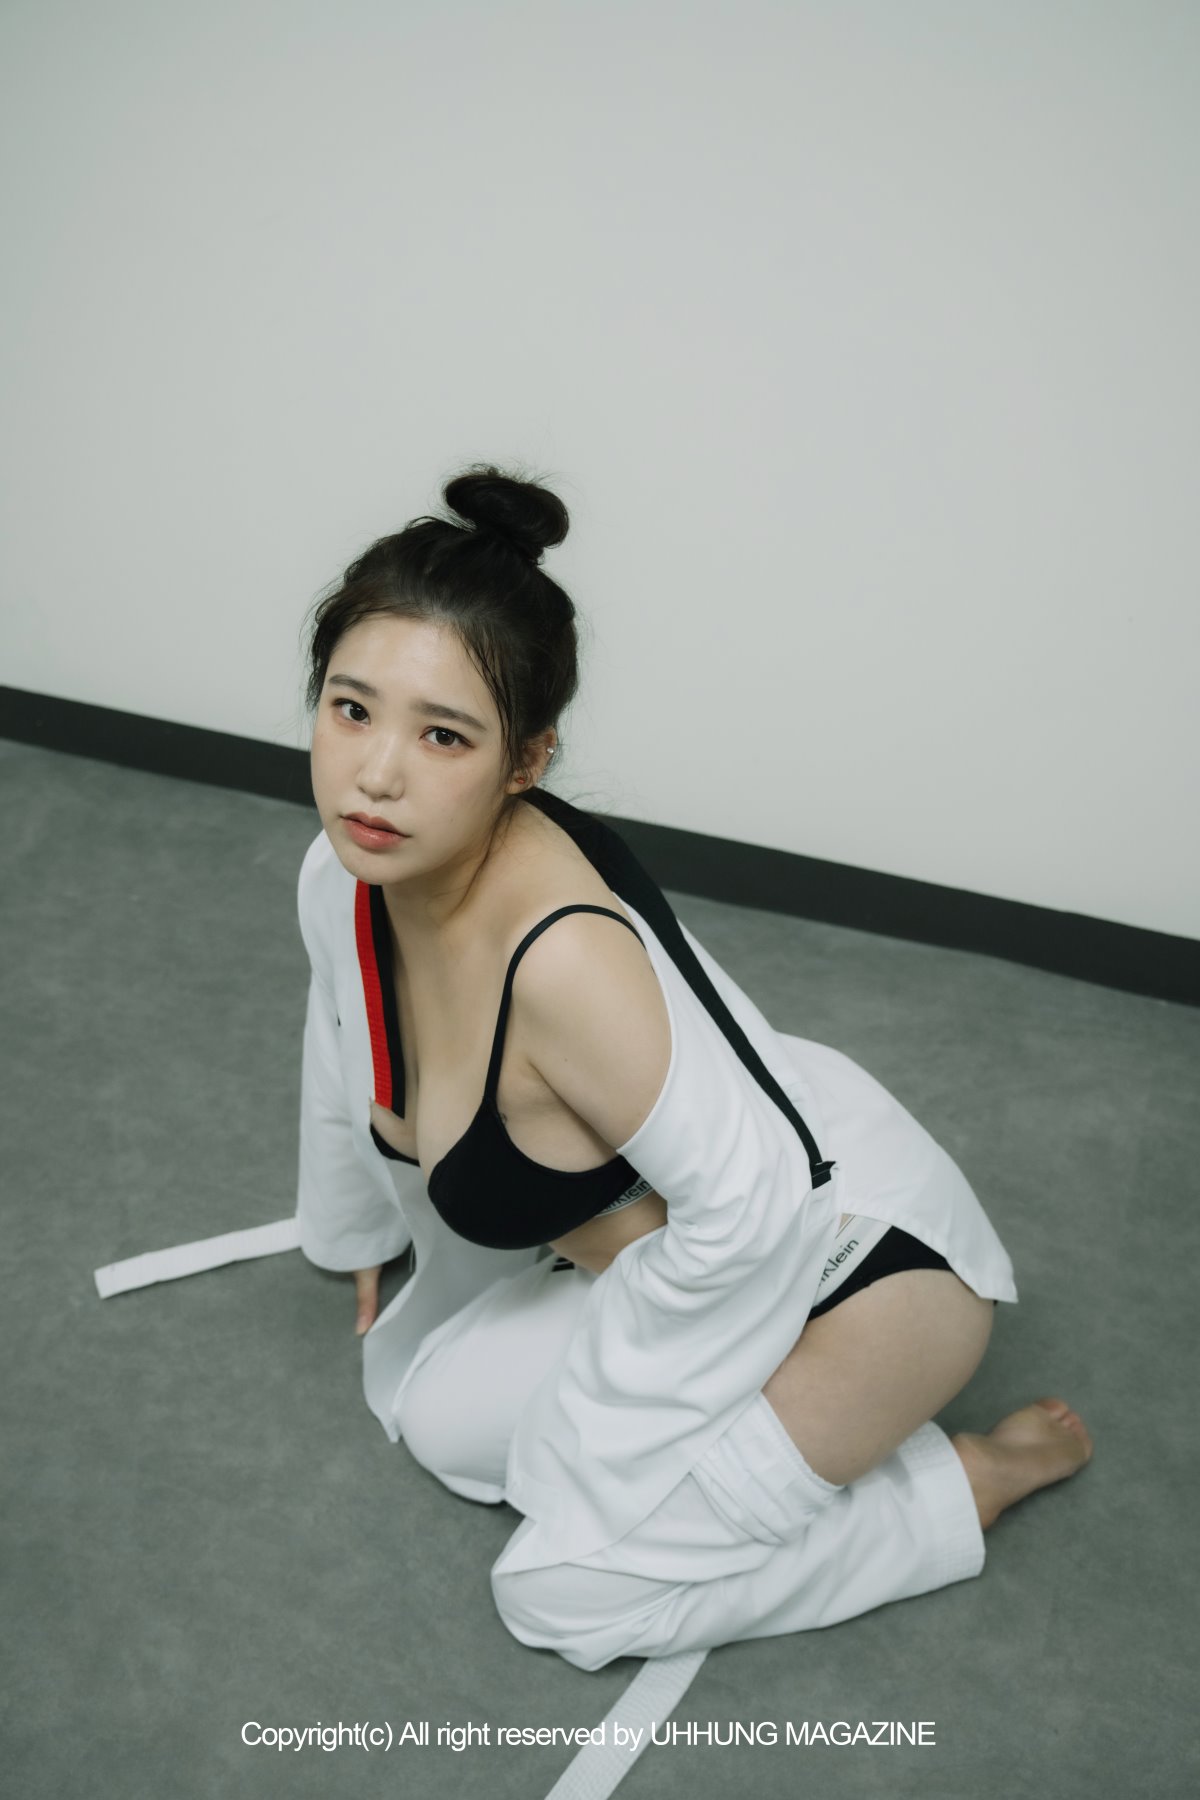 UHHUNG MAGAZINE Jenn Vol 1 Taekwondo Part1 0034 6745212217.jpg